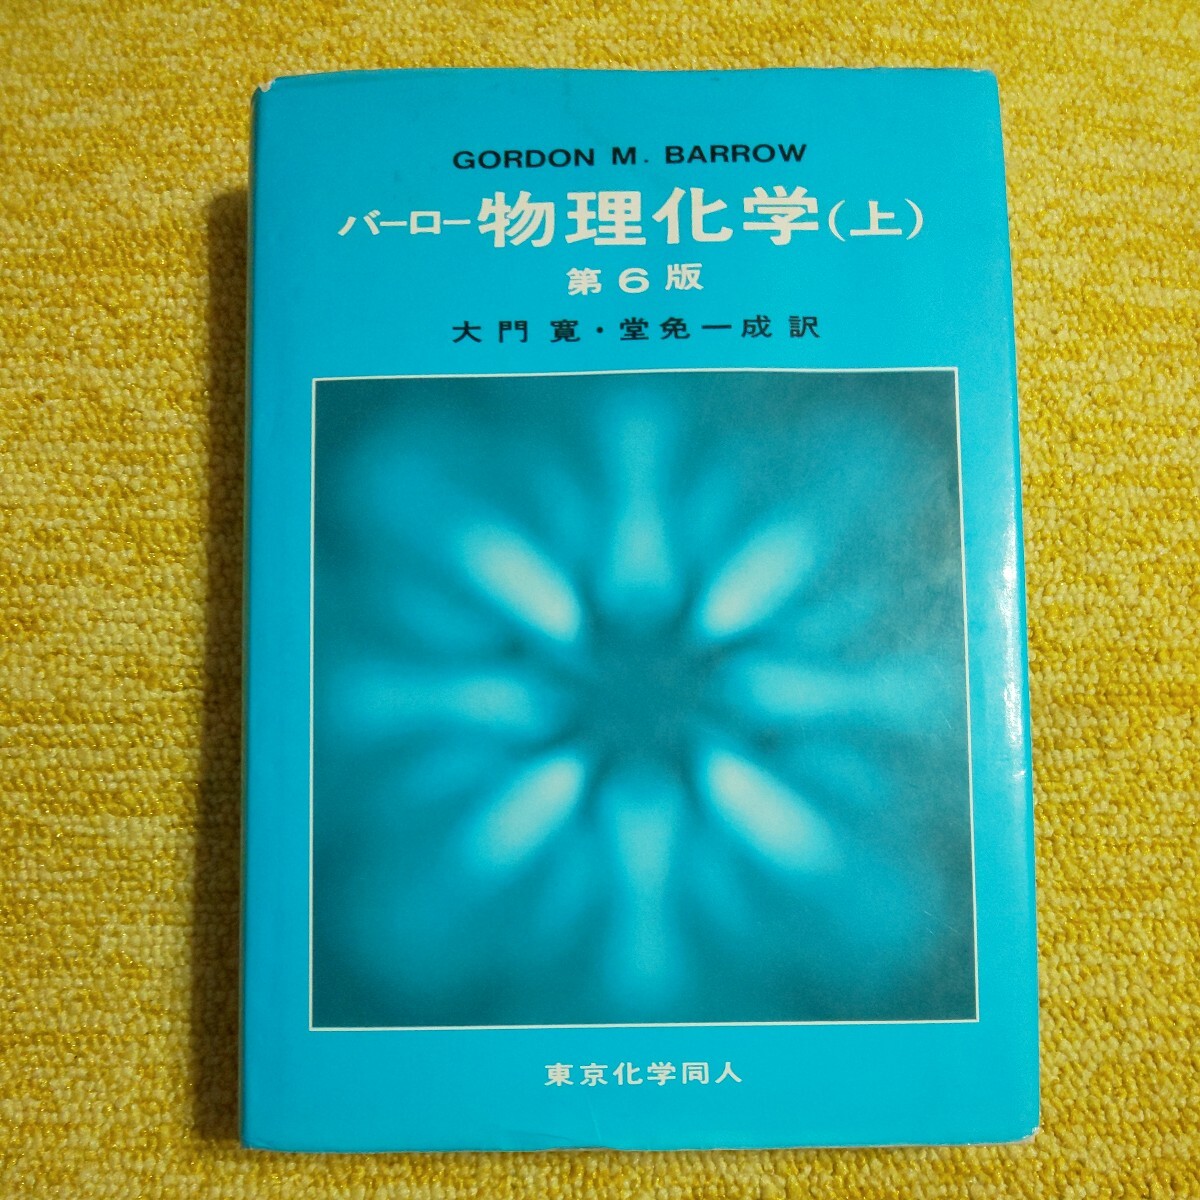  балка low предмет физика и химия ( сверху ) no. 6 версия большой ..*. освобождение один . перевод Tokyo химия такой же человек 